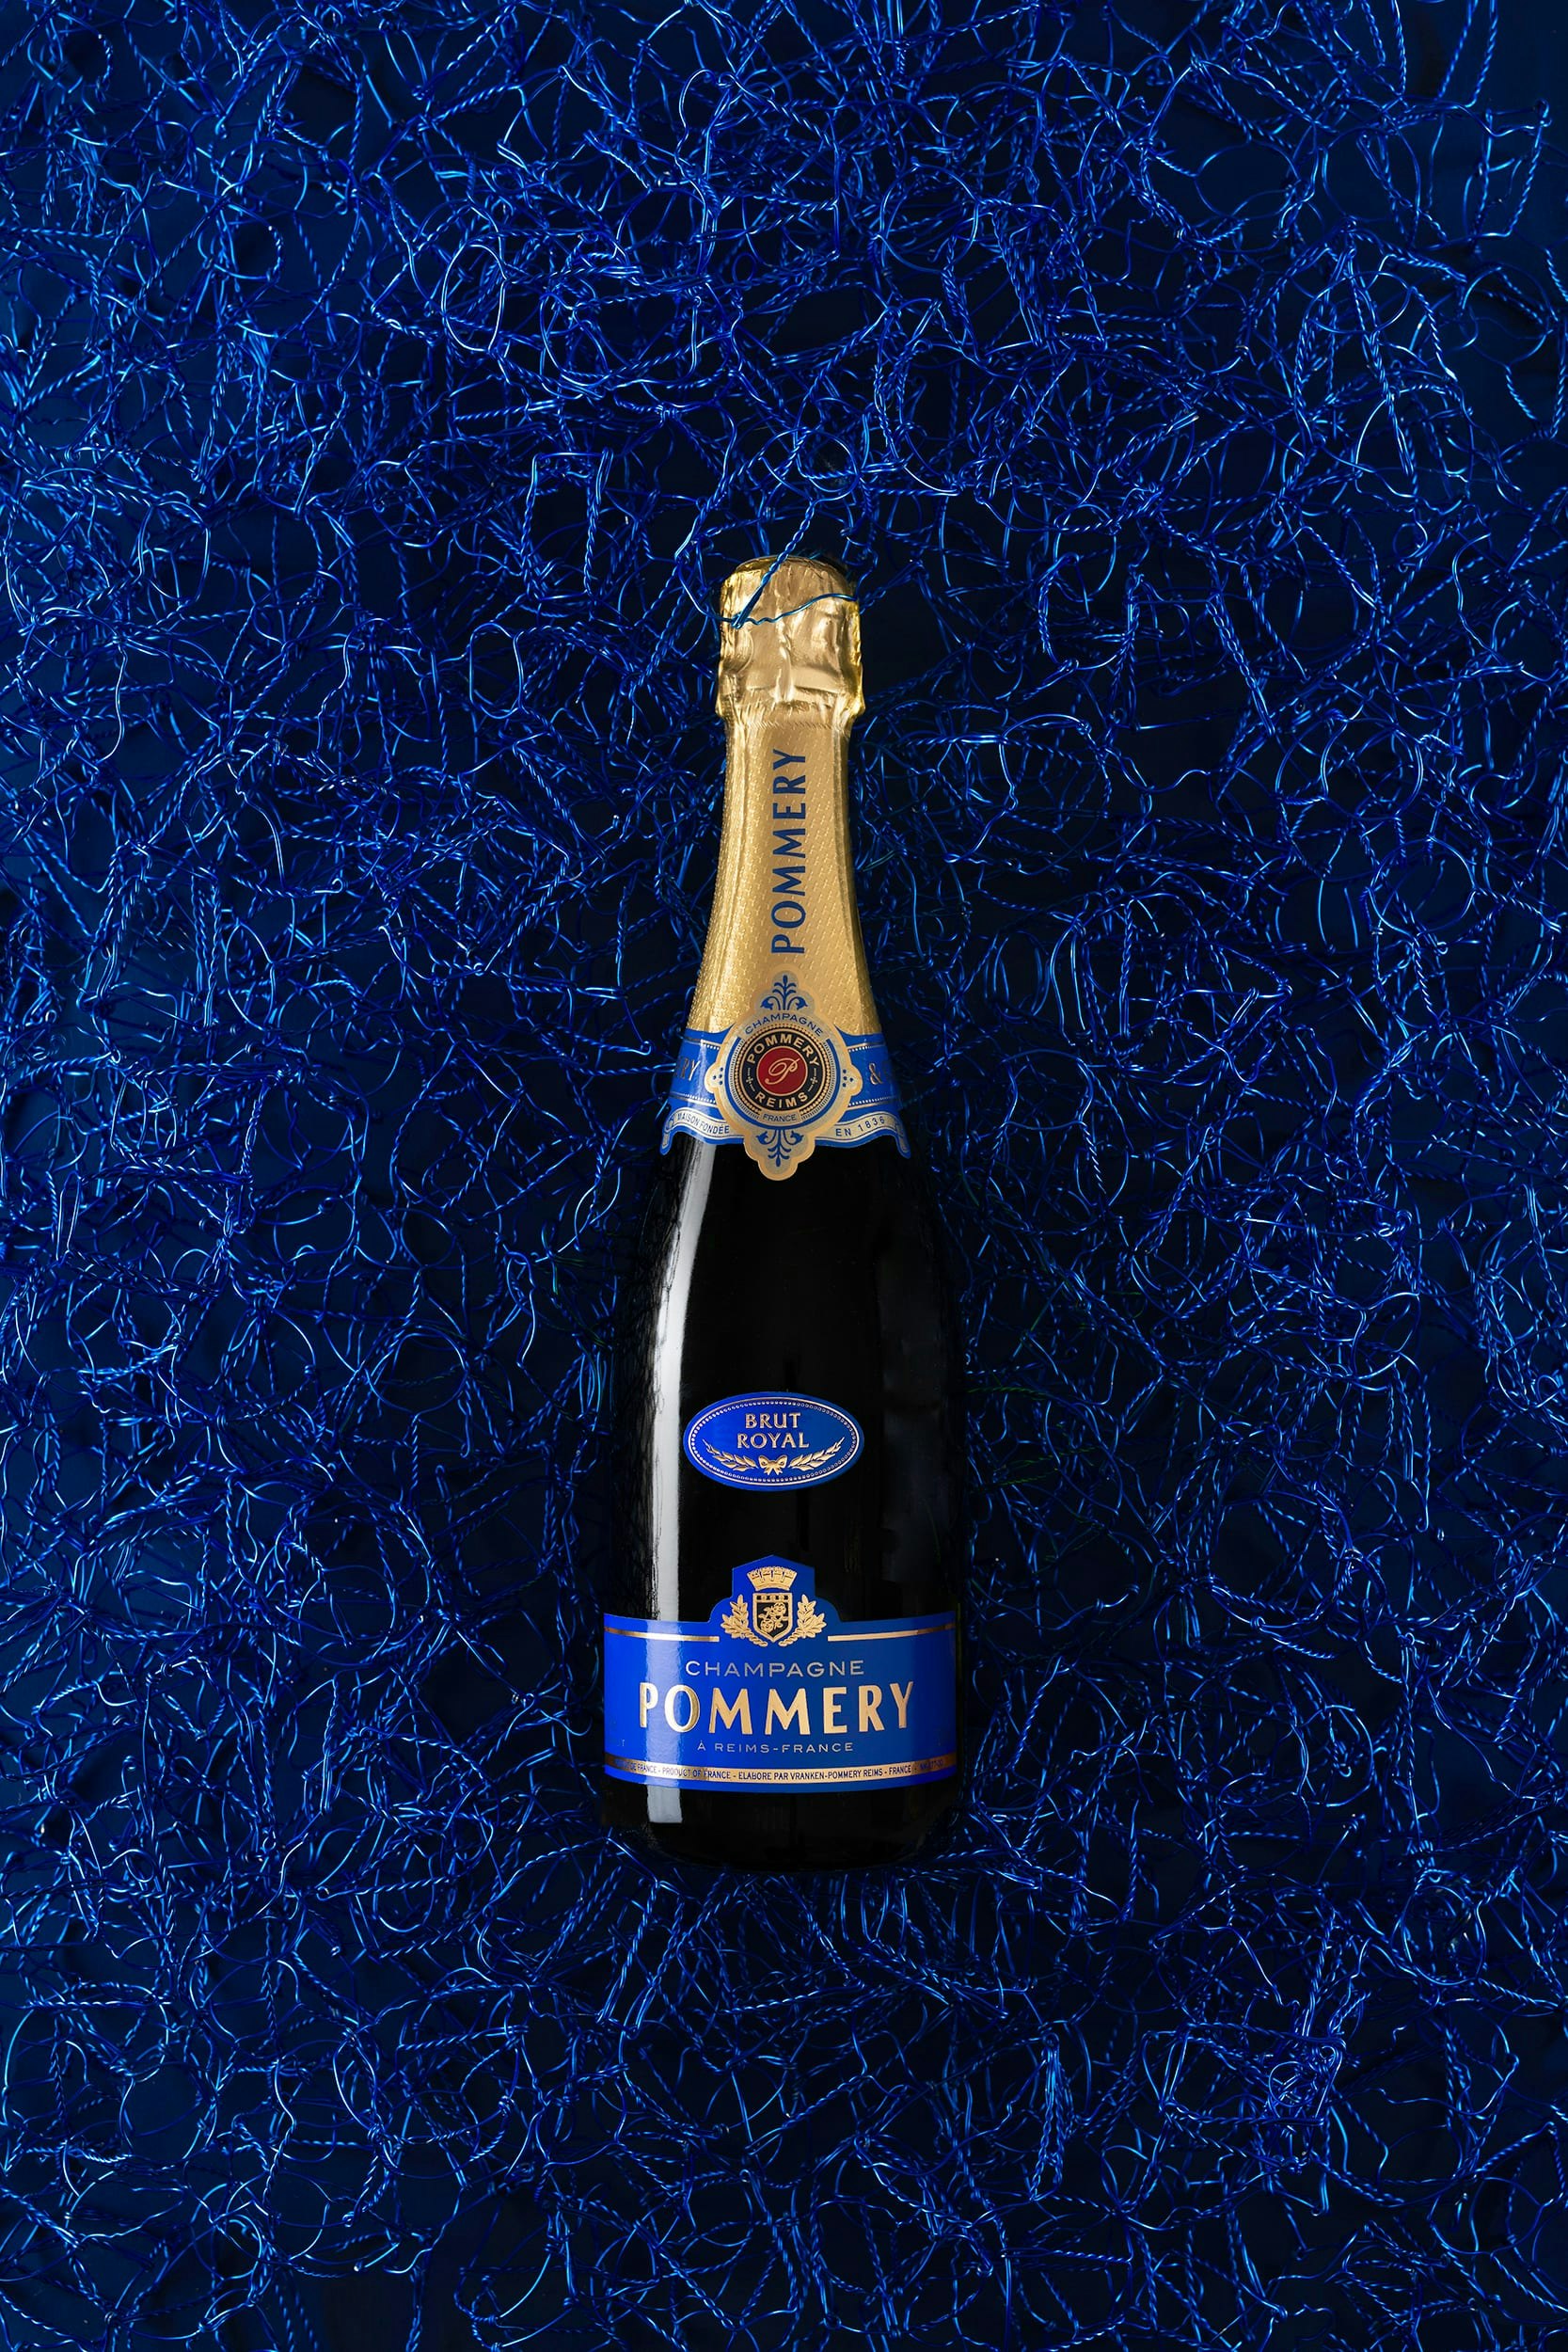 Bottle of Pommery Brut Royal 75cl on blue font